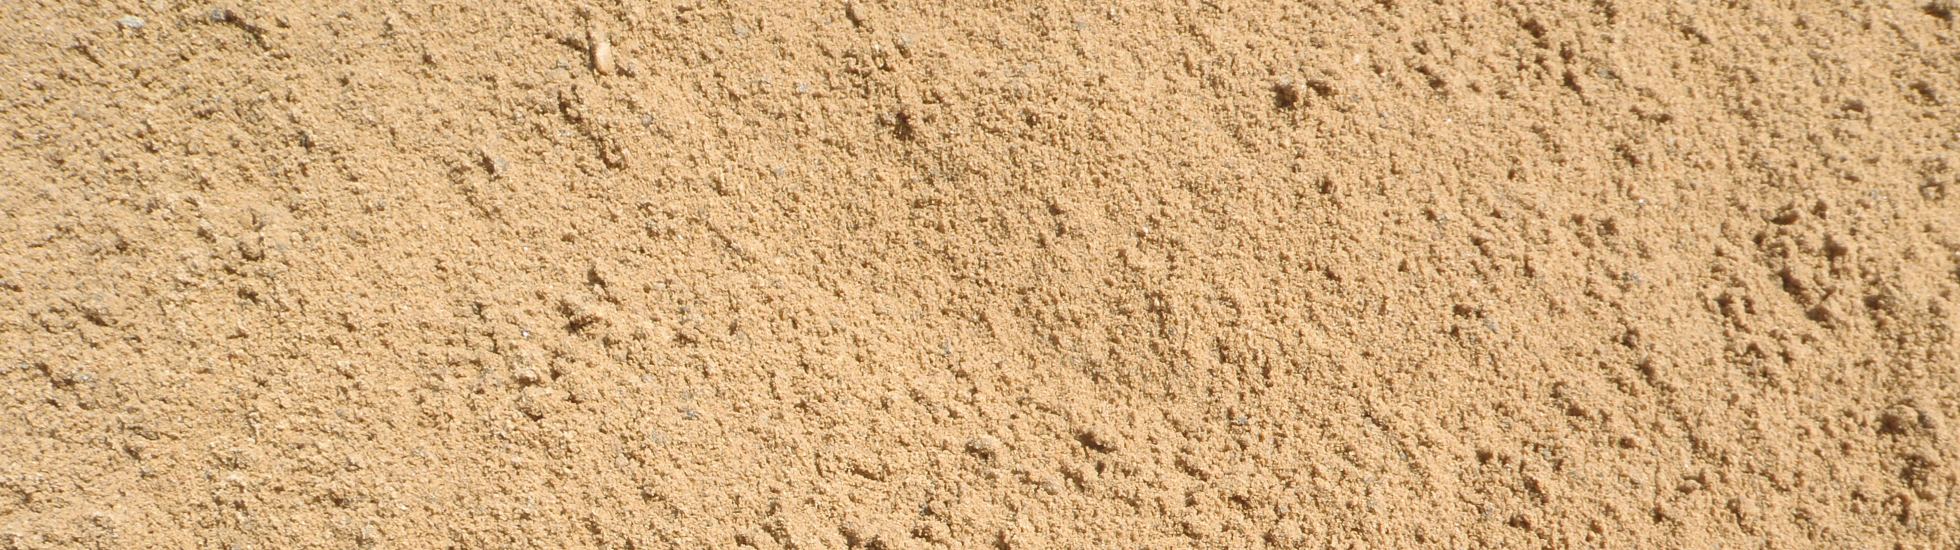 leer extract psychologie ZANDBESTELLEN - RM Bestrating zand bestellen den helder Julianadorp